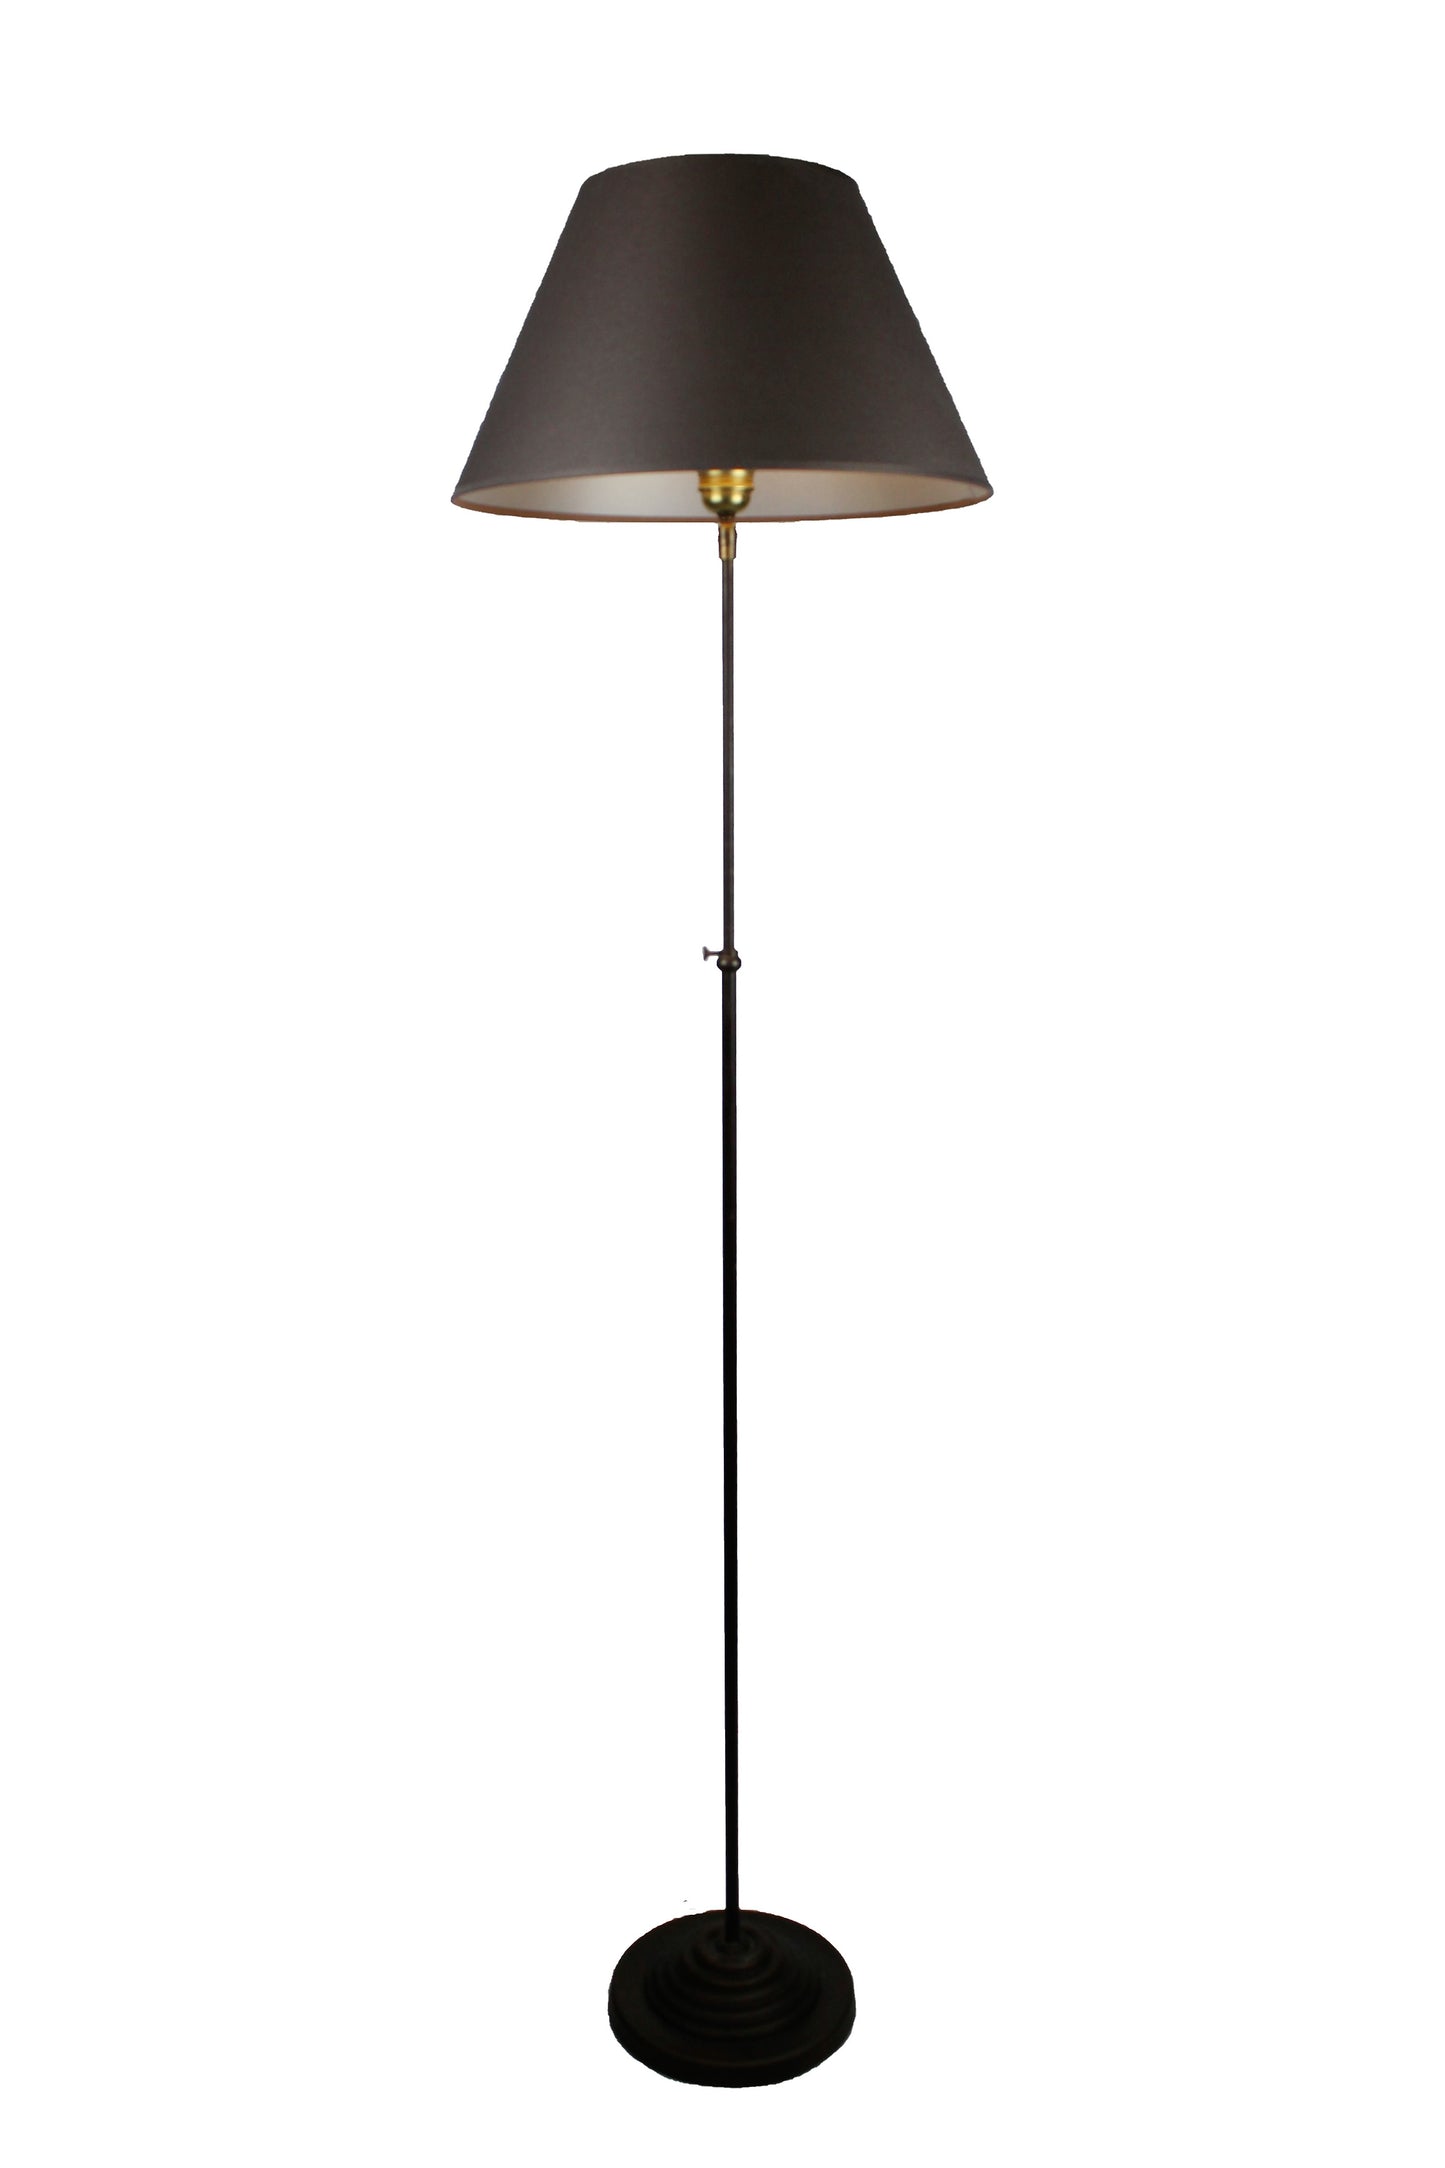 Stehlampe Metall dunkelbraun mit konischem Schirm aus Stoff dunkelgrau